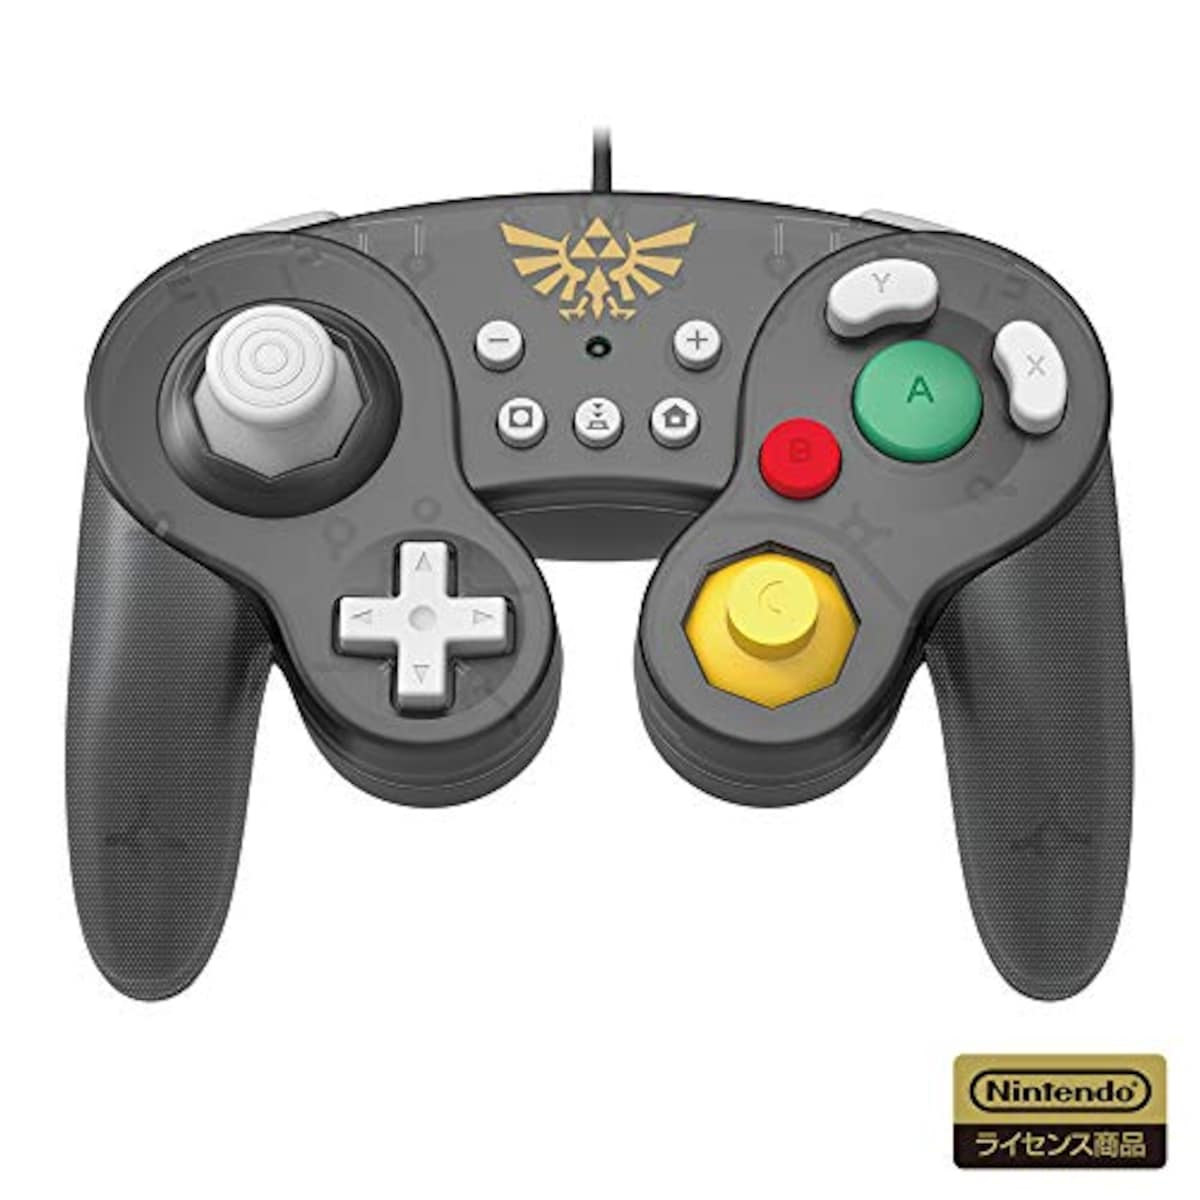 クラシックコントローラー for Nintendo Switch ゼルダ